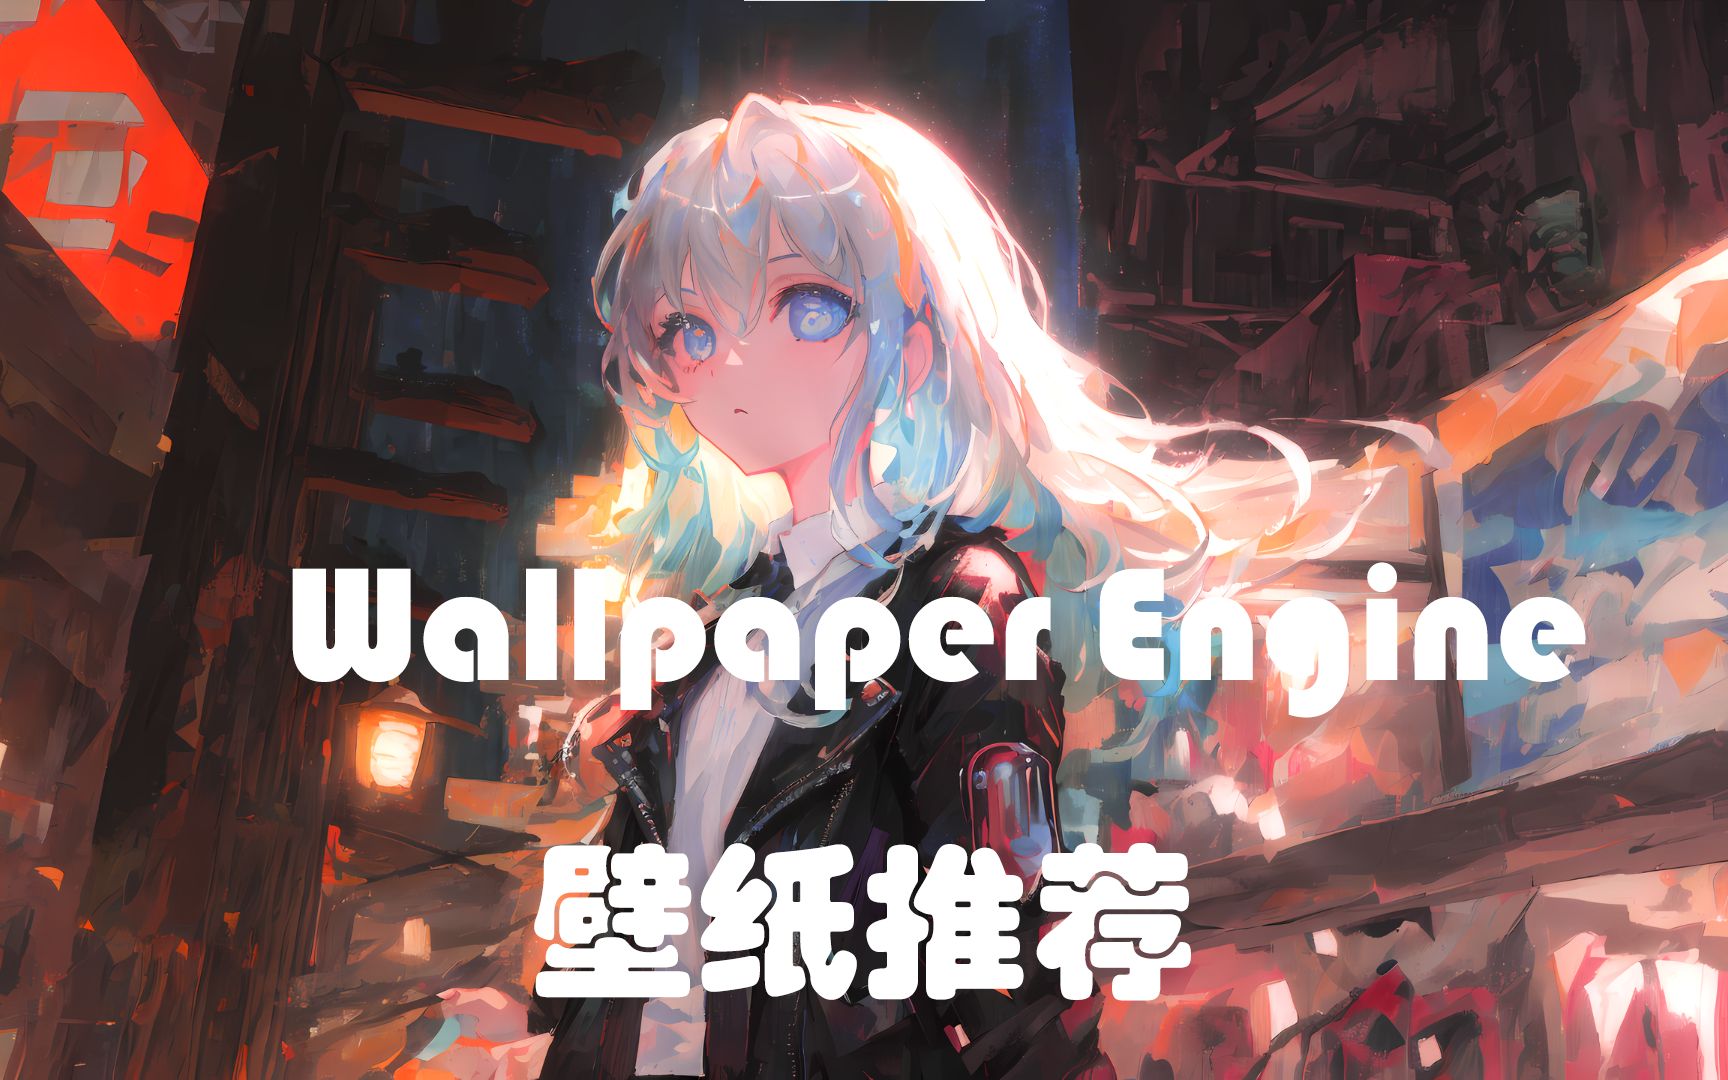 【Wallpaper Engine】壁纸推荐，随时间变化颜色